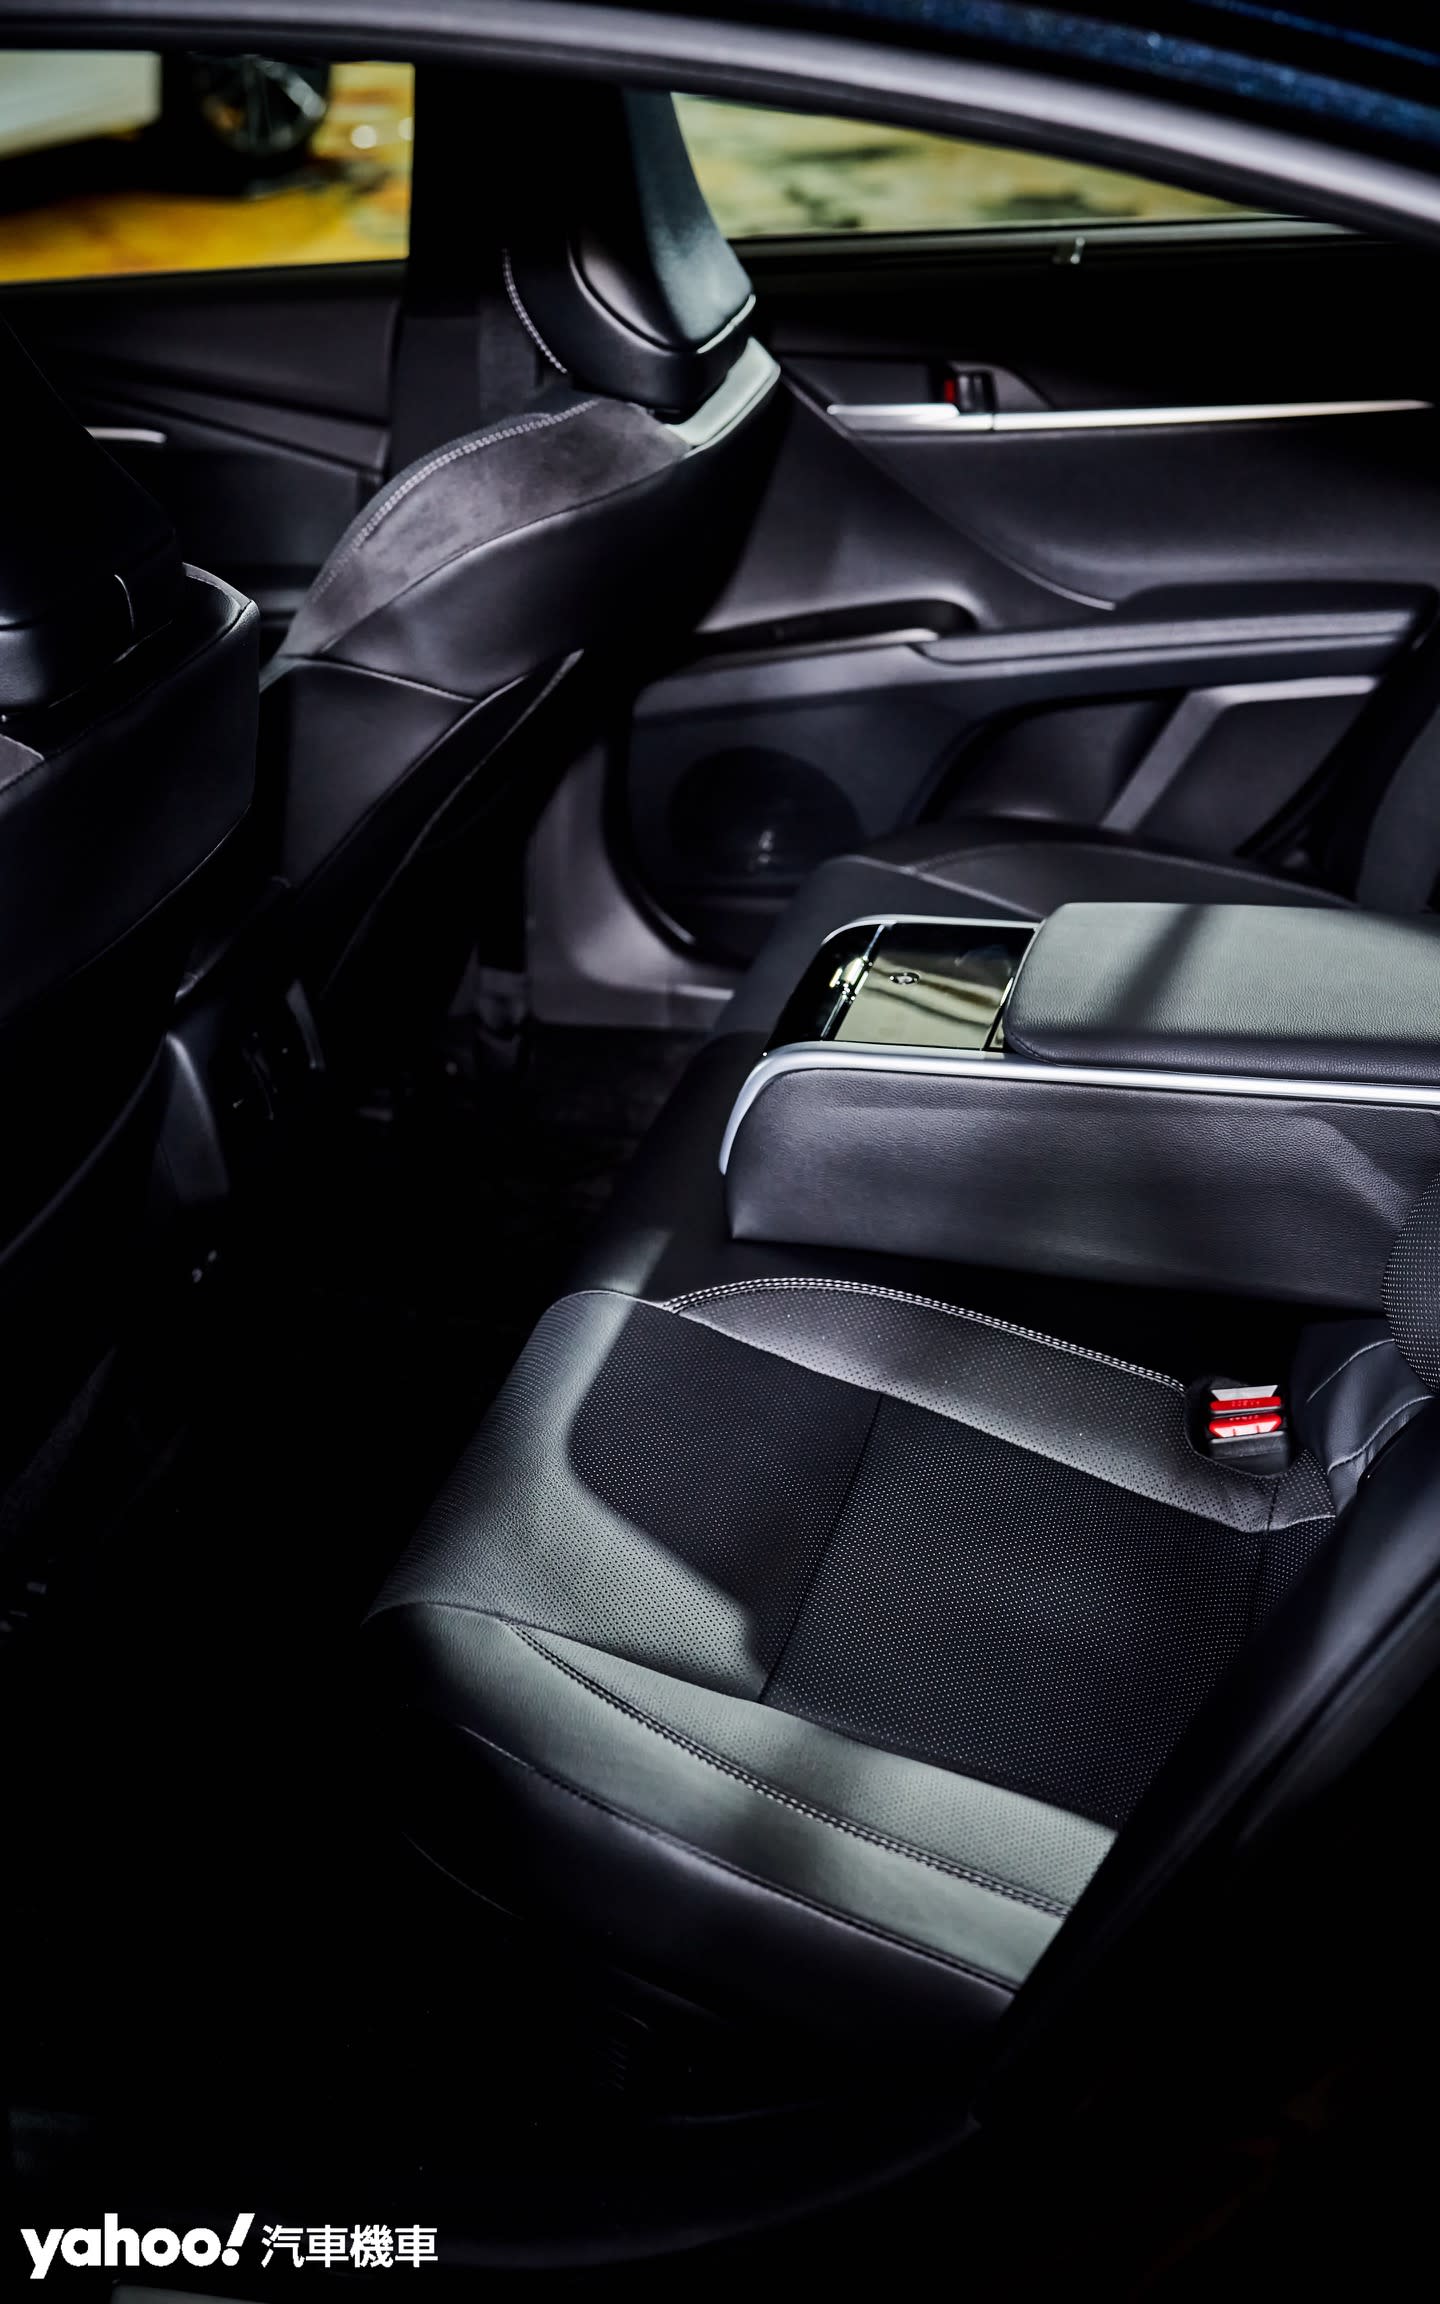 全新Toyota Camry後排座椅在頂規Hybrid旗艦版中加入前所未有的雙座豪華設定。